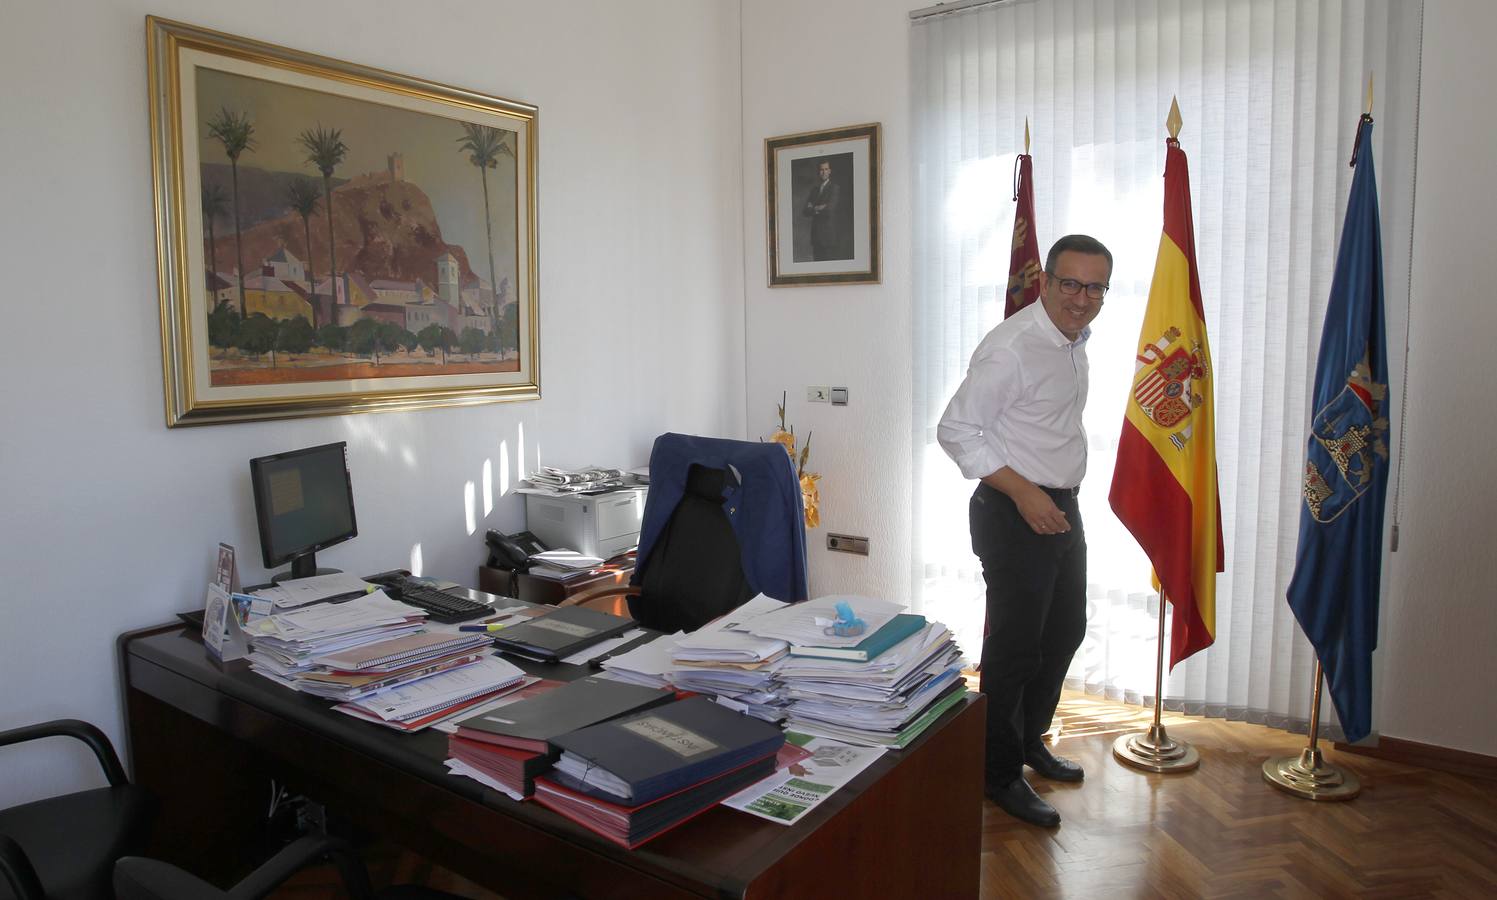 El líder electo del PSOE regional, Diego Conesa, cuidó ovejas, recogió melones y sirvió copas para ayudar en casa antes de ser ‘rockabilly’ con tupé y abogado